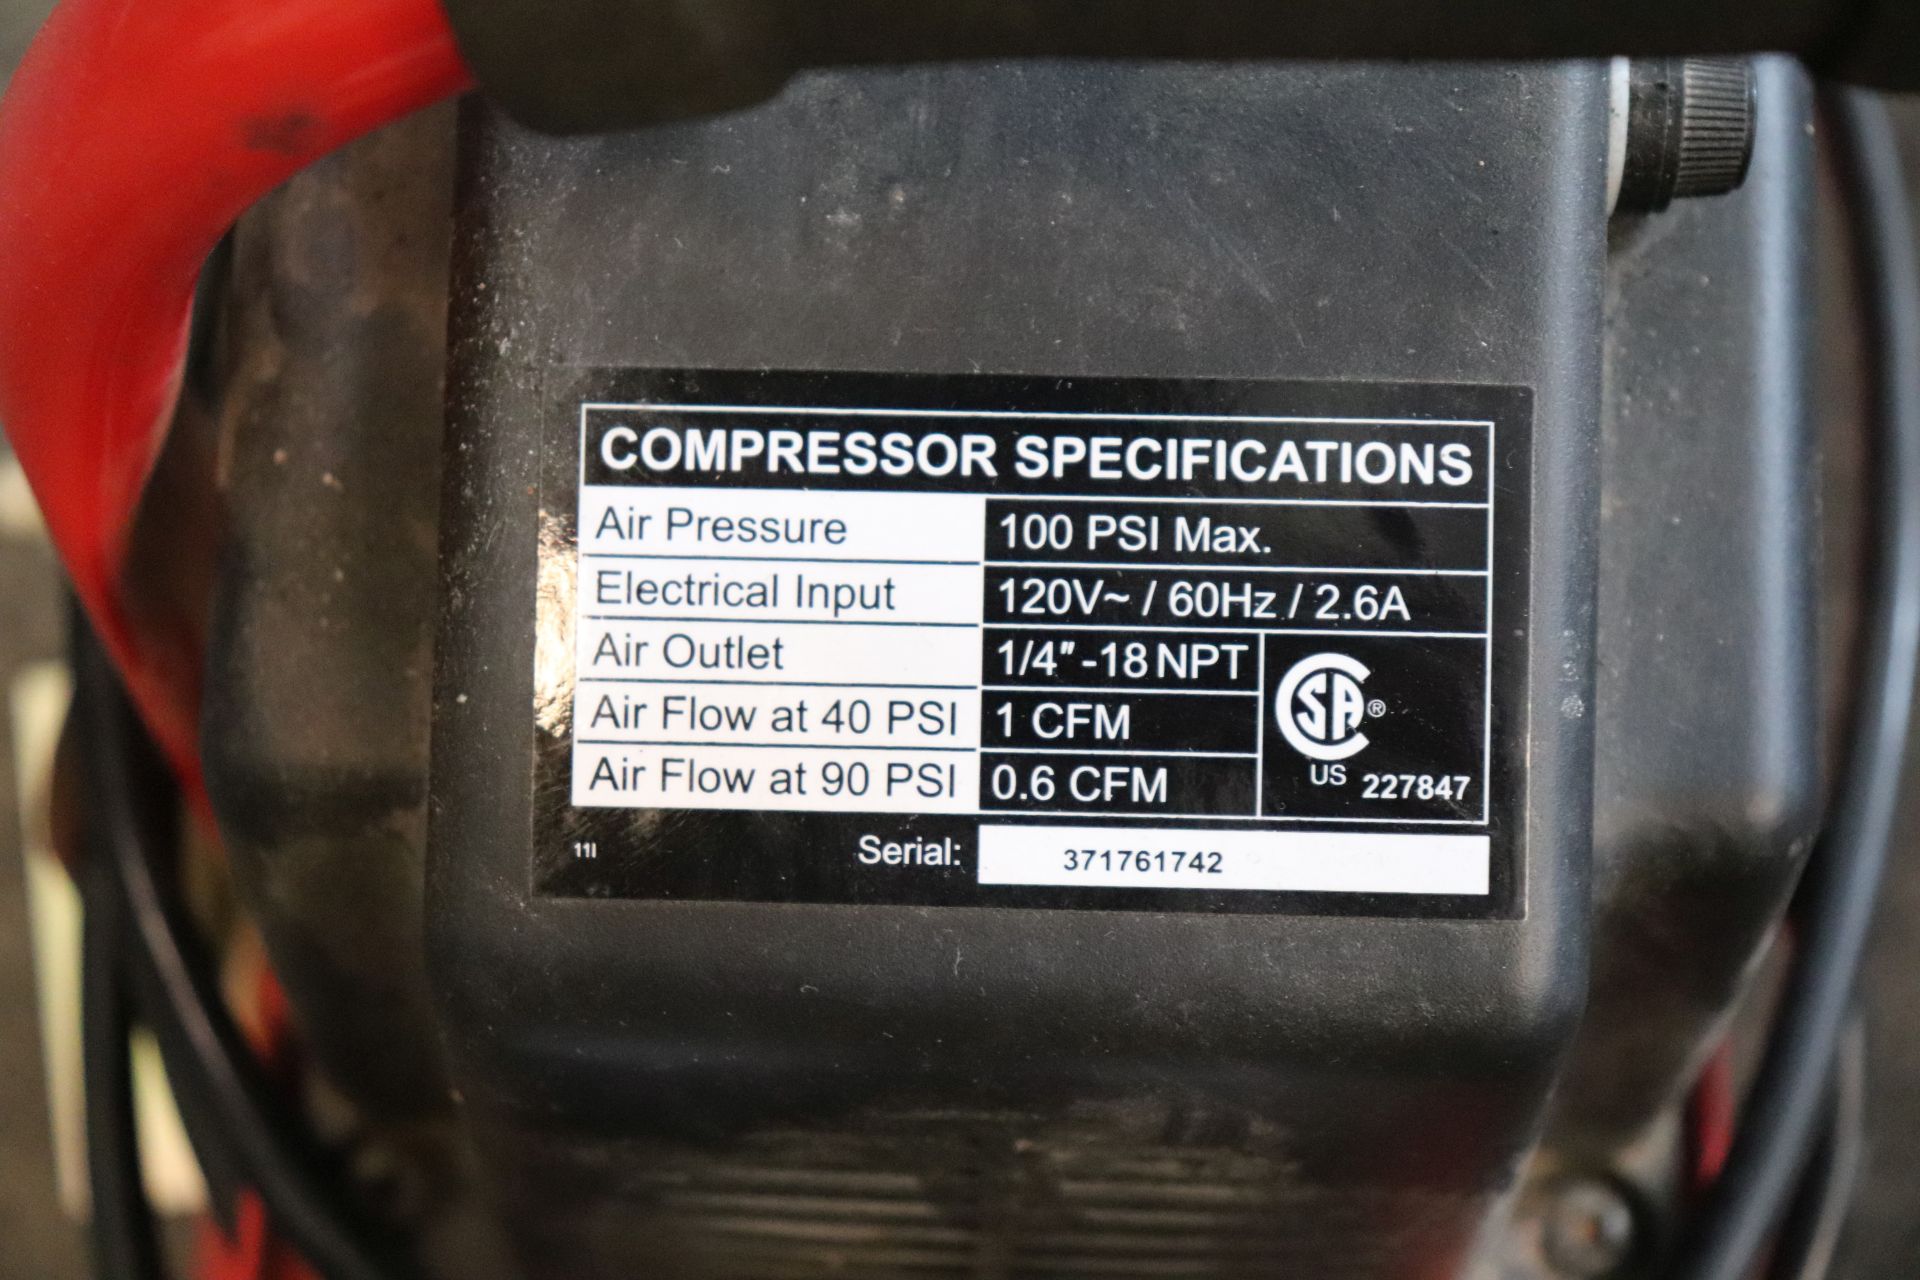 100 psi 1/3 Hp 3 Gallon air compressor - Image 2 of 2